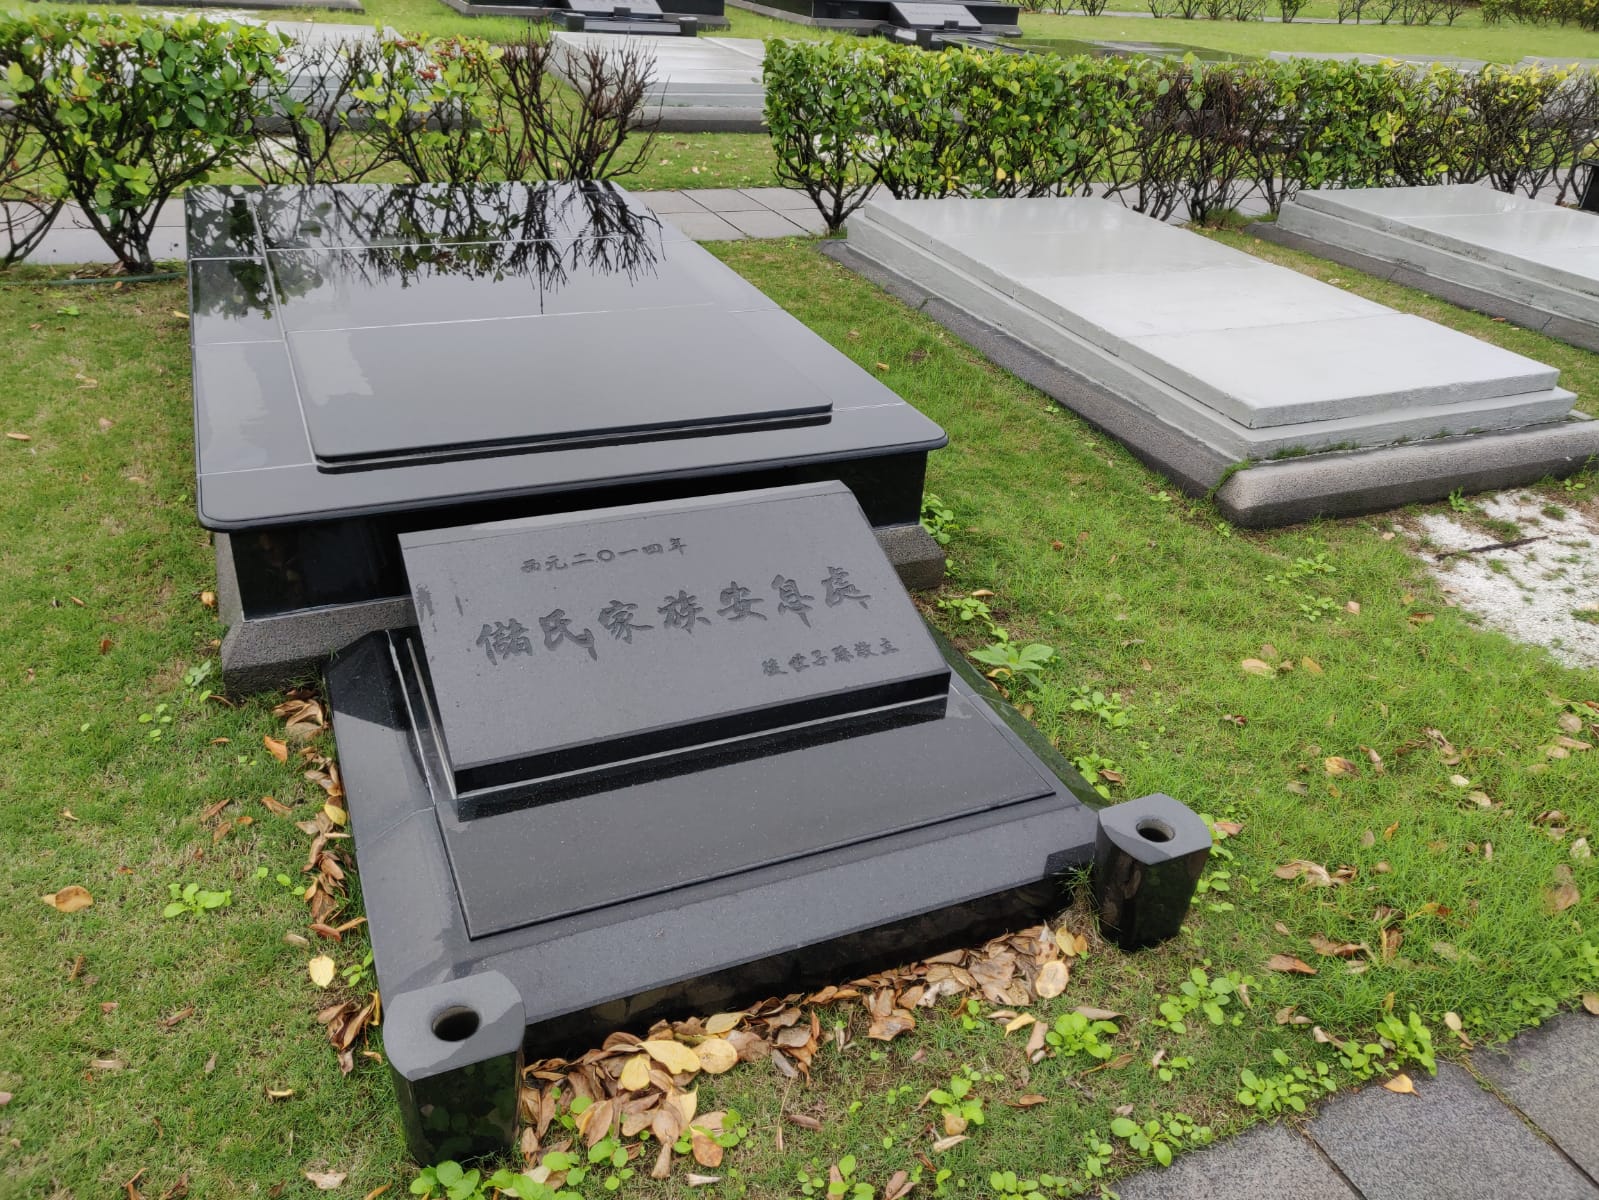 台灣金山私人豪華墓園單人土葬700萬起跳